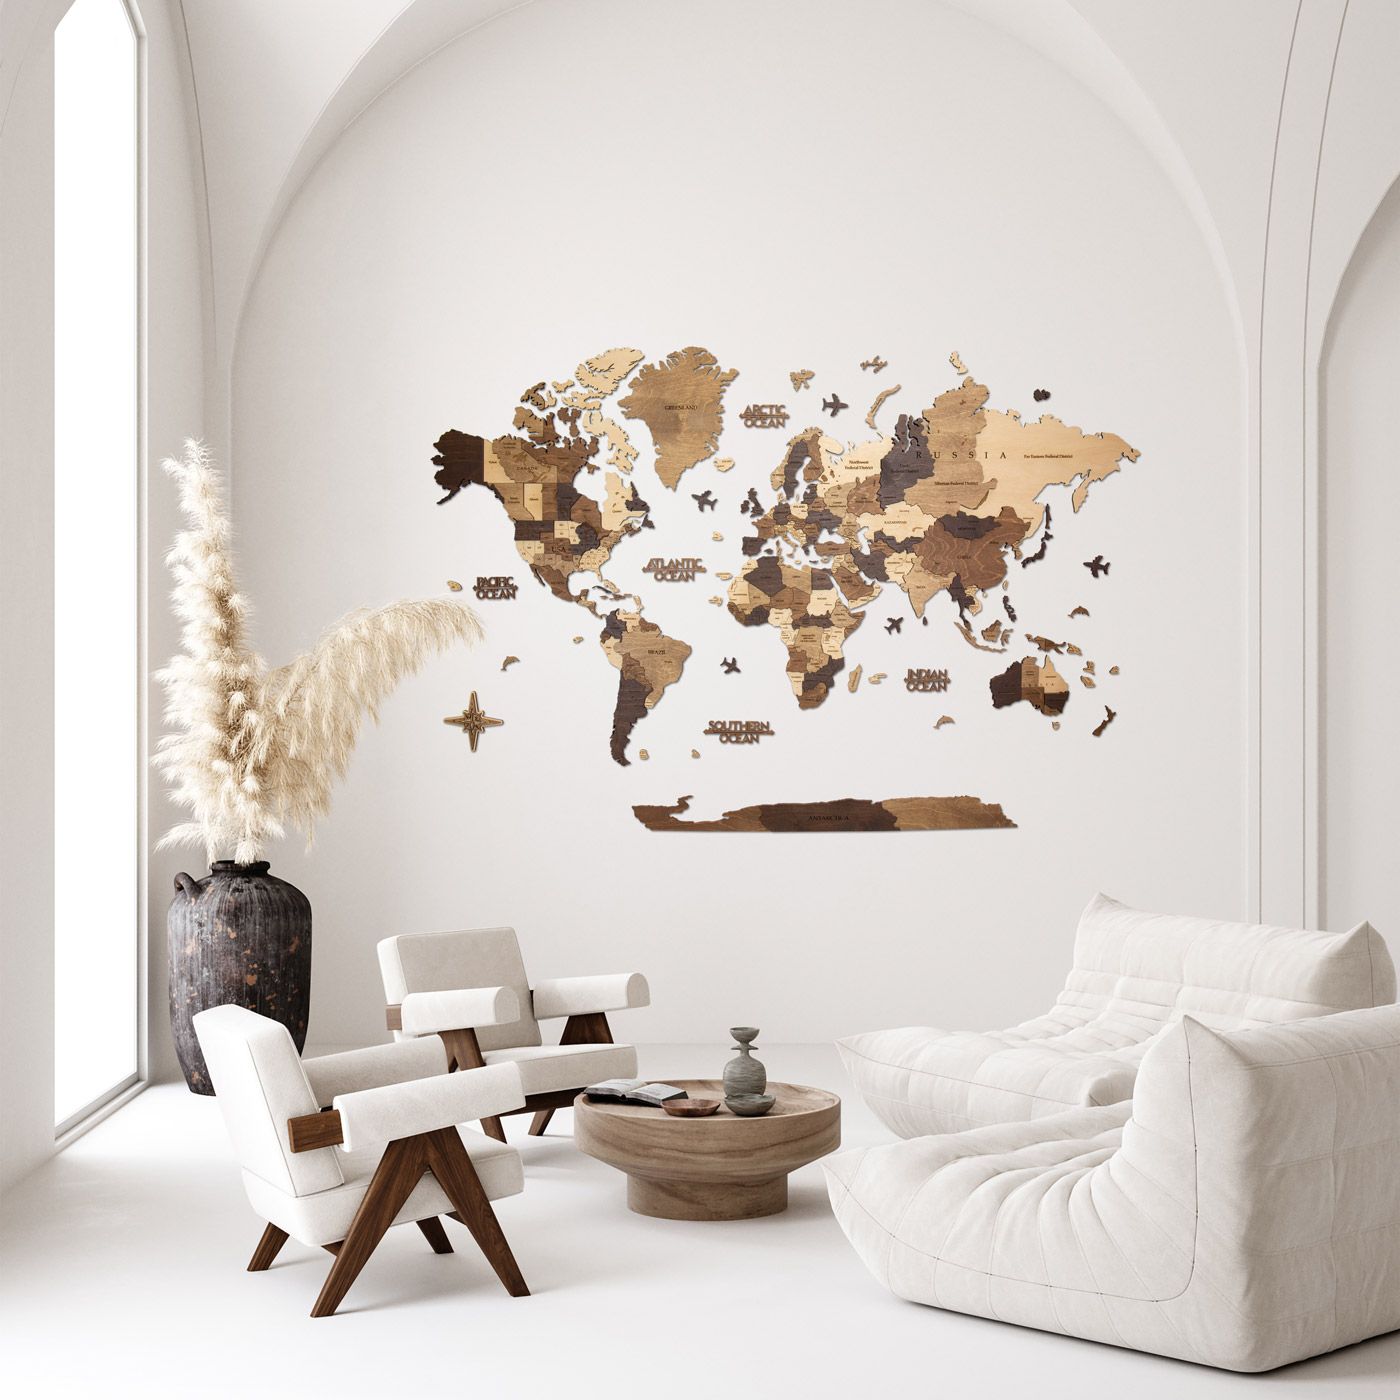 Τρισδιάστατος ξύλινος παγκόσμιος χάρτης. Ξύλινη διακόσμηση τοίχου. Χάρτης με χρώματα καρυδιάς. Ksilart